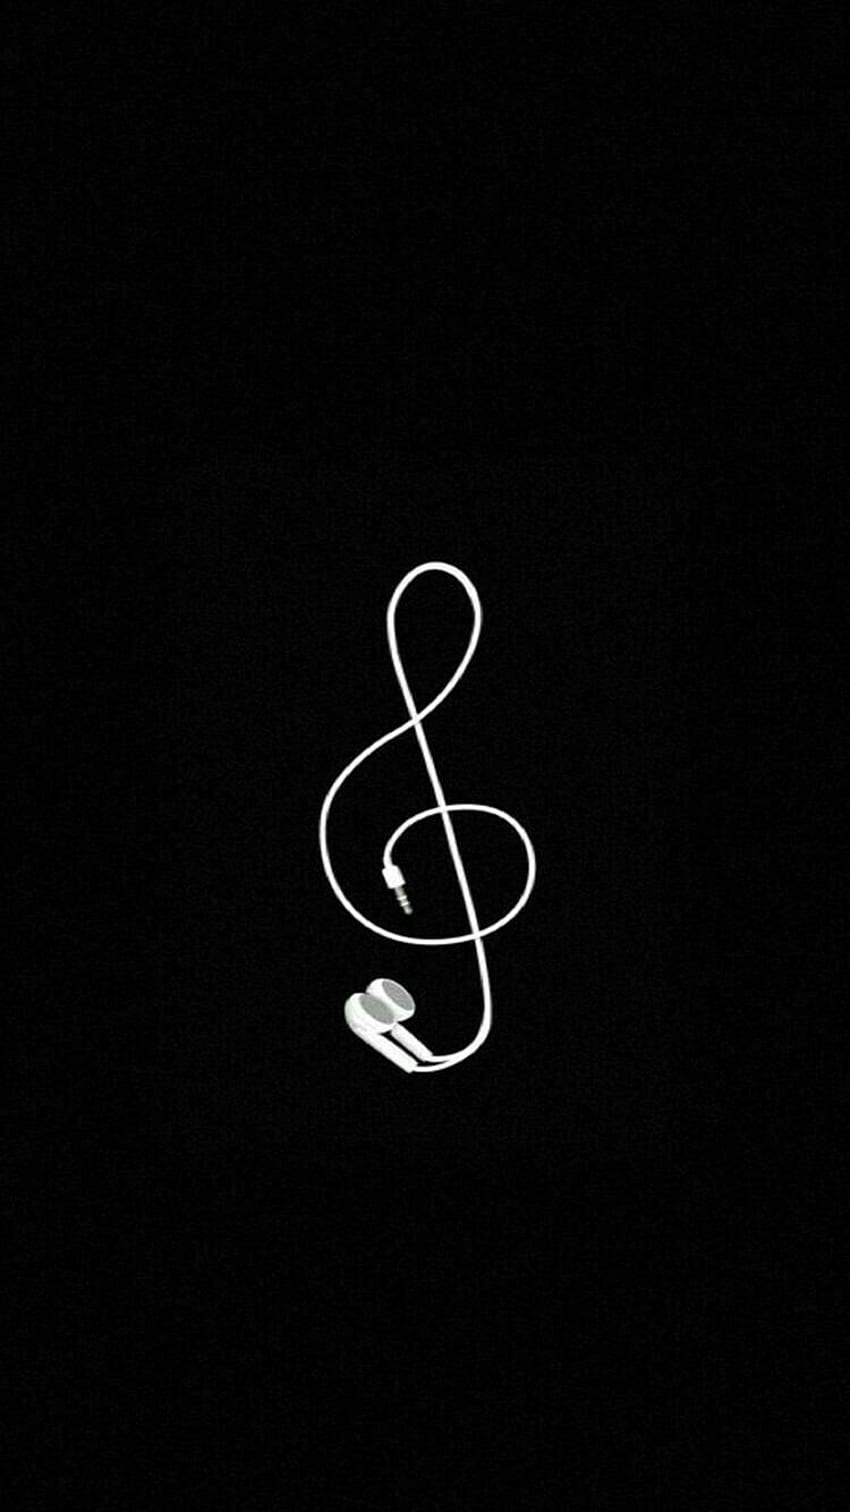 Simple Music Violinschlüssel-Ohrhörer schwarz-weiß iPhone, Android HD-Handy-Hintergrundbild